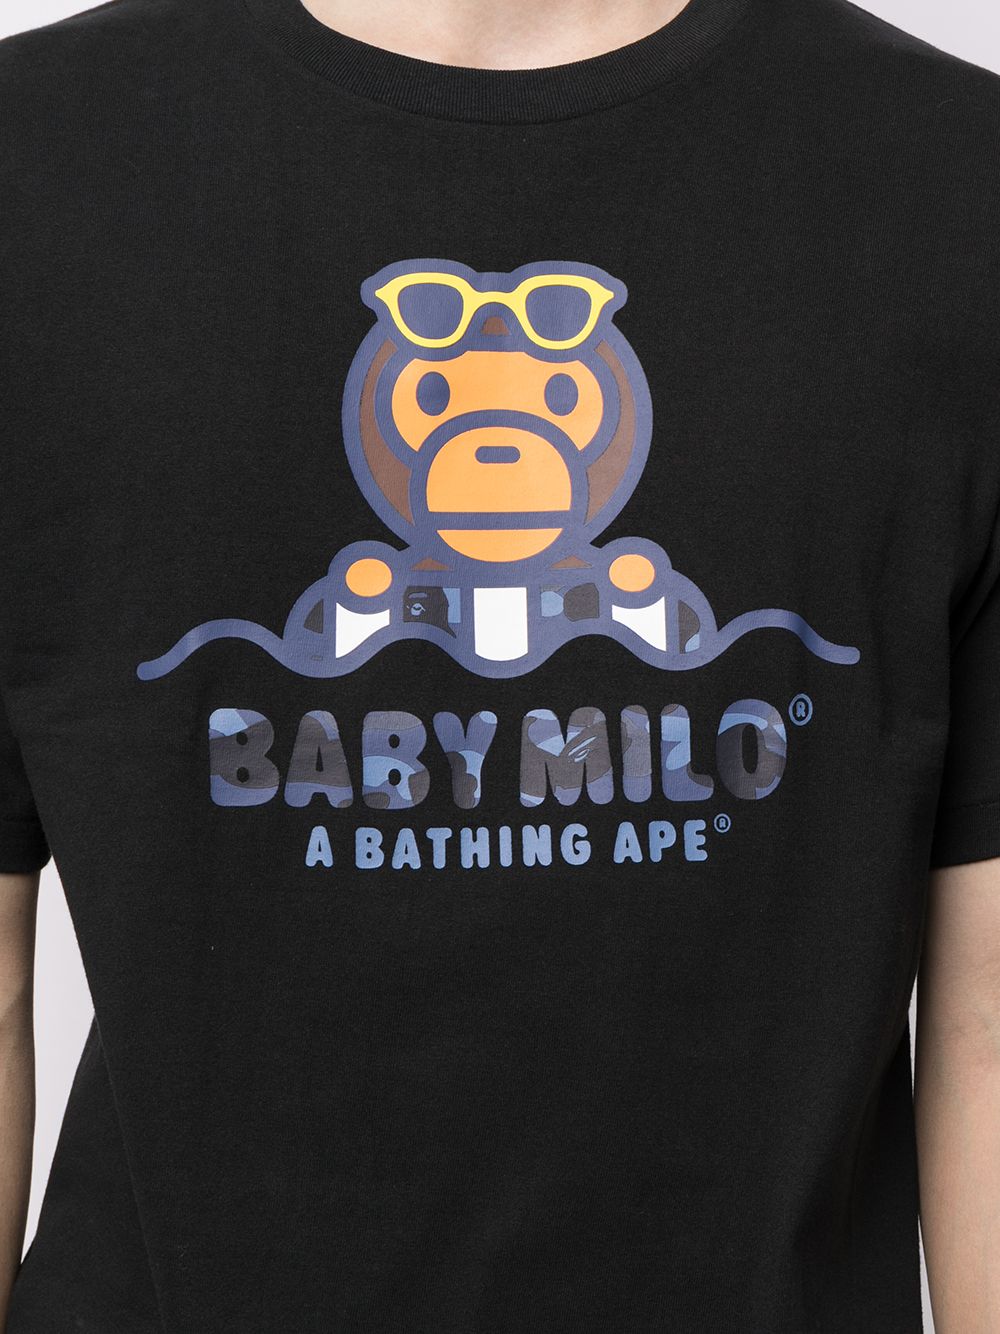 фото A bathing ape® футболка baby milo с принтом